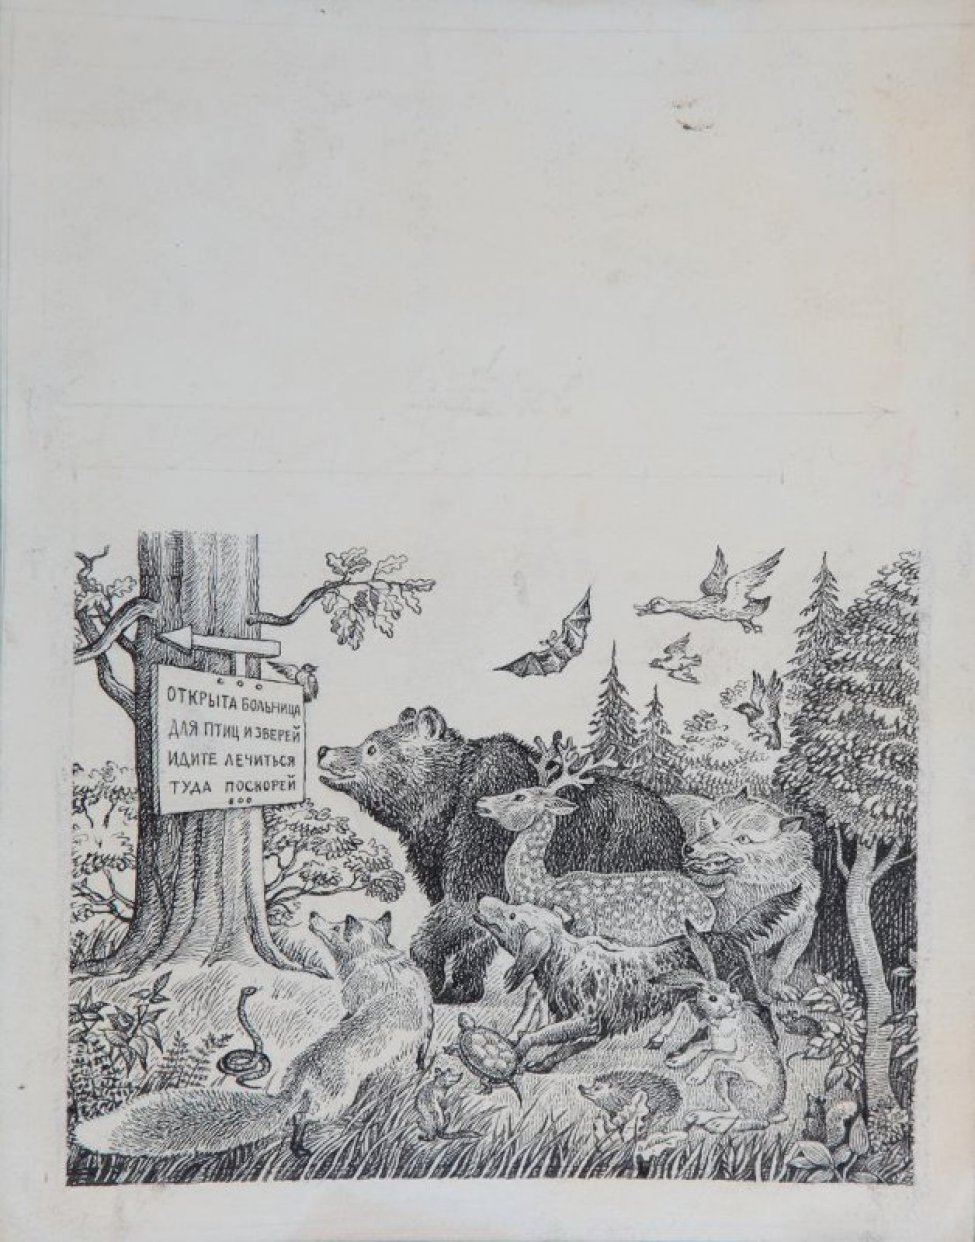 В нижней части листа изображен дуб с  табличкой, перед ней группа зверей: медведь, волк, олень, собака, заяц, еж, черепаха, лиса, змея.